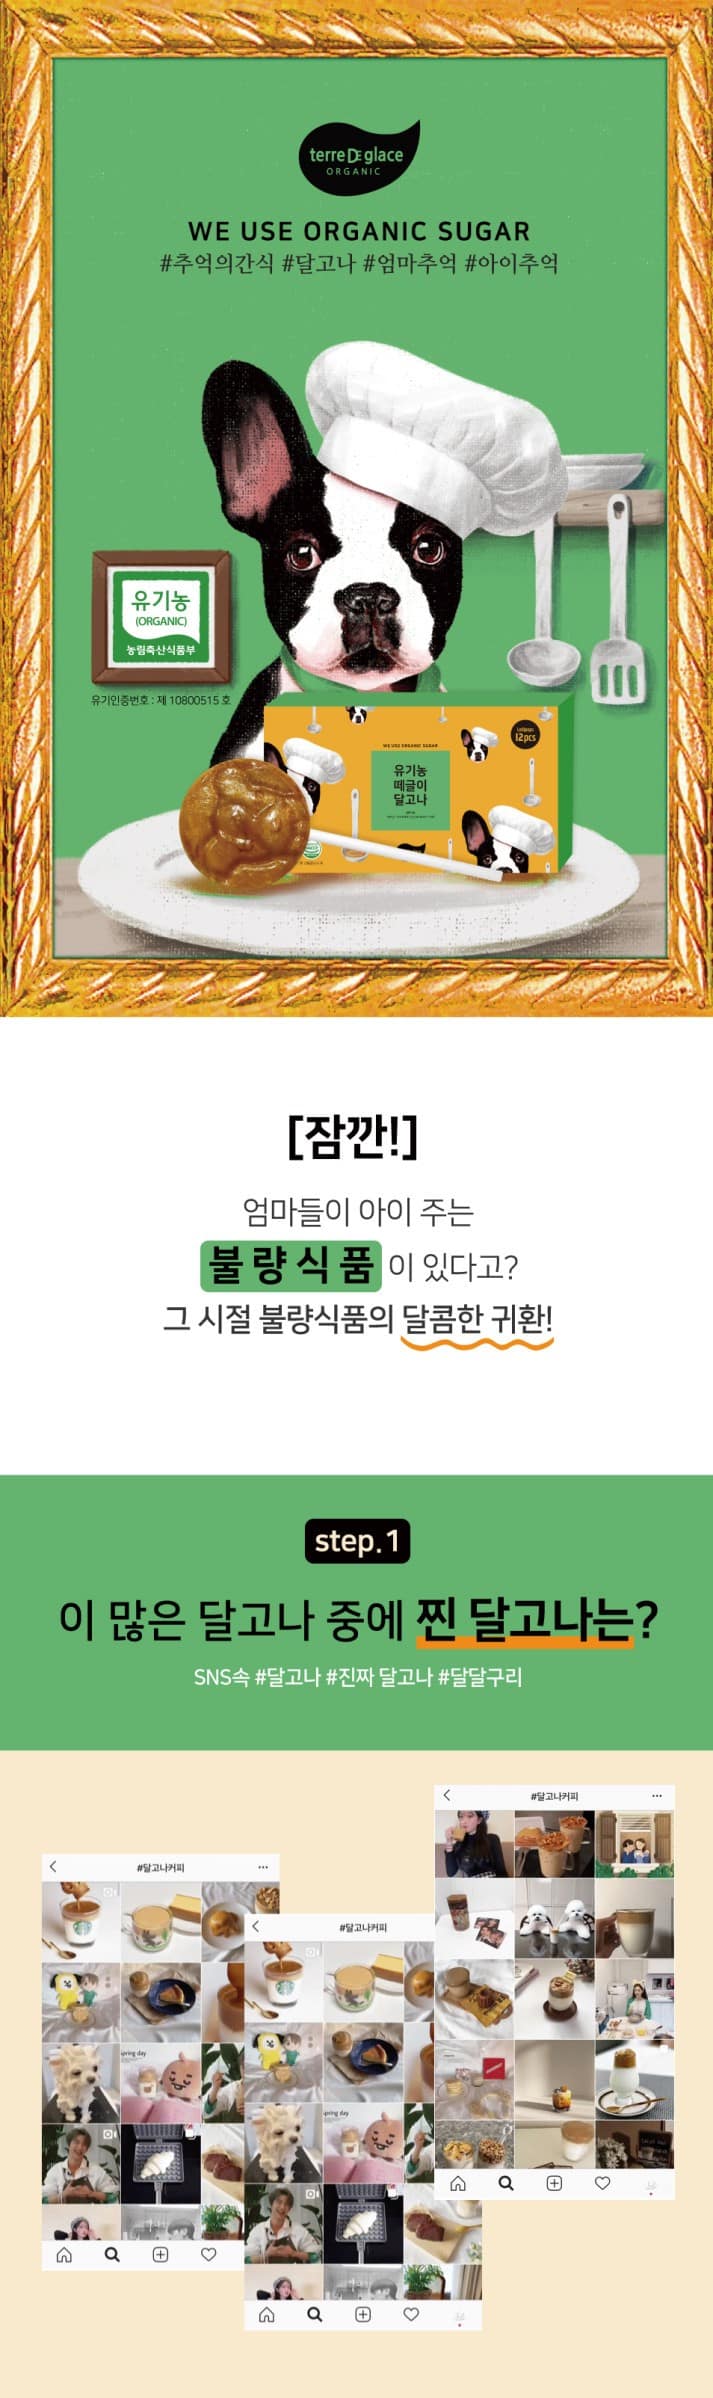 韓國食品-[떼르드글라스] 떼글이 유기농 달고나 15g